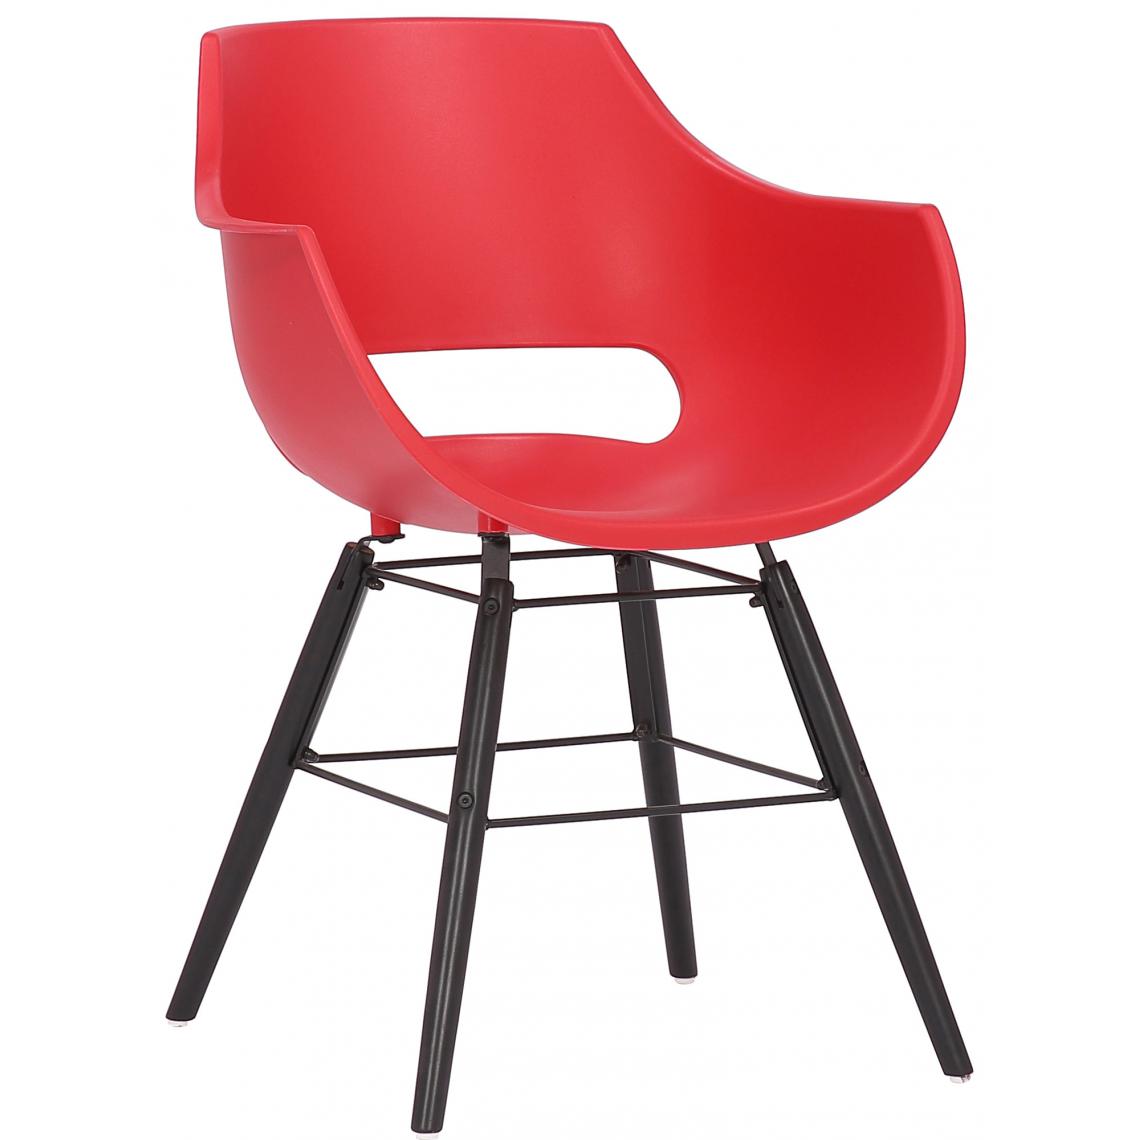 Icaverne - Admirable Chaise serie Helsinki plastique noir couleur rouge - Chaises